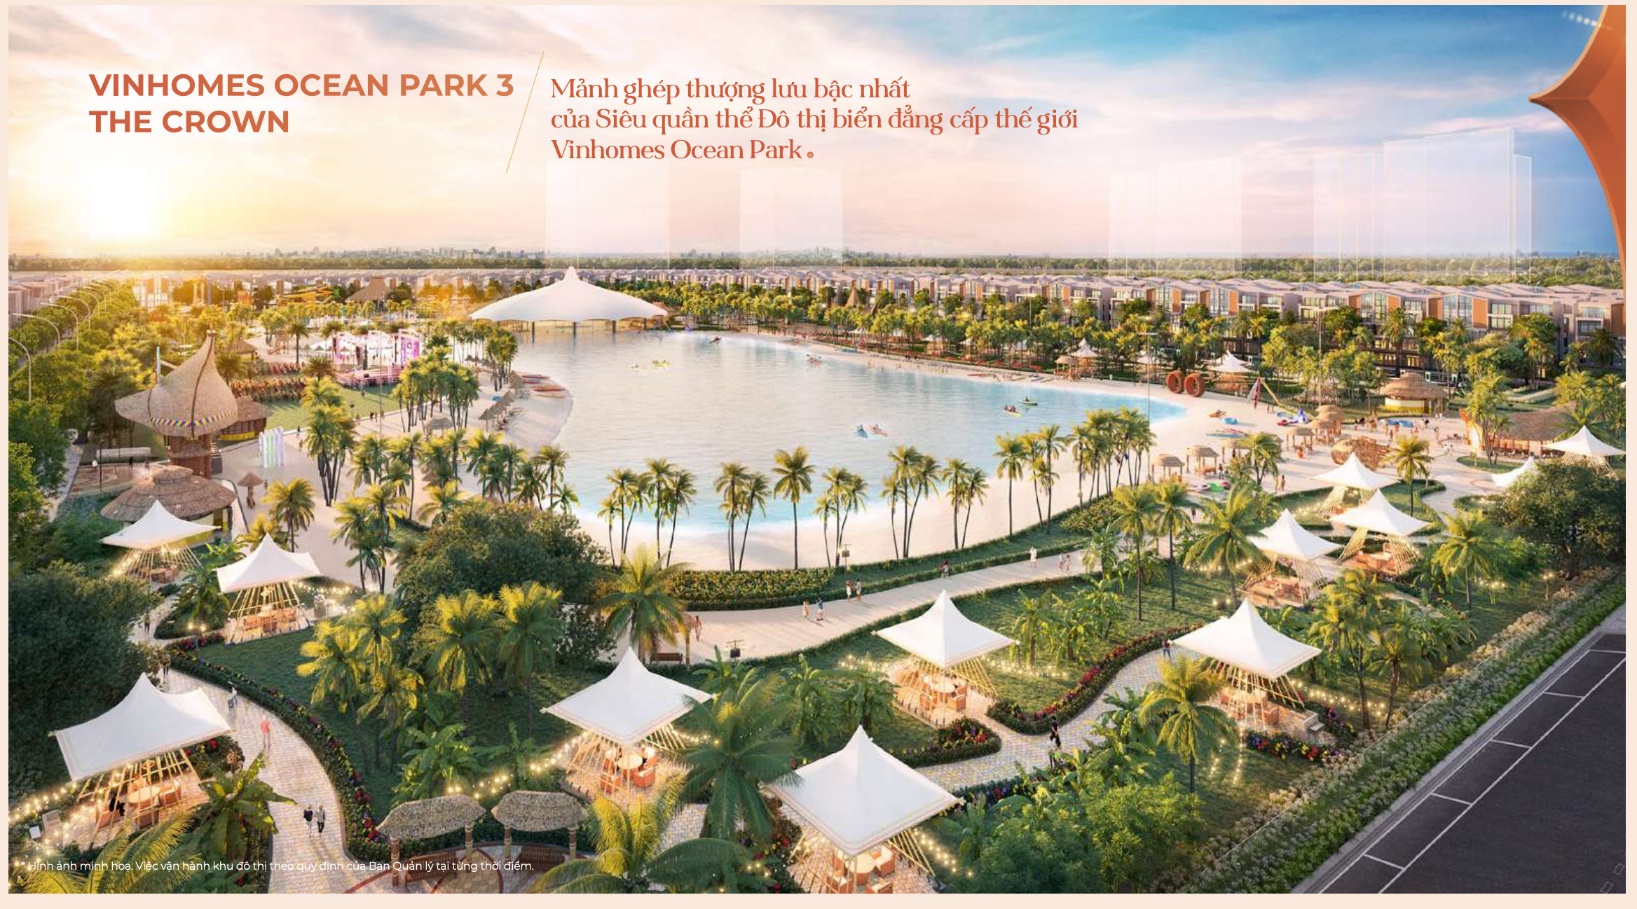 Phú Hưng Property chính thức phân phối dự án Vinhomes Ocean Park 3 - Ảnh 4.